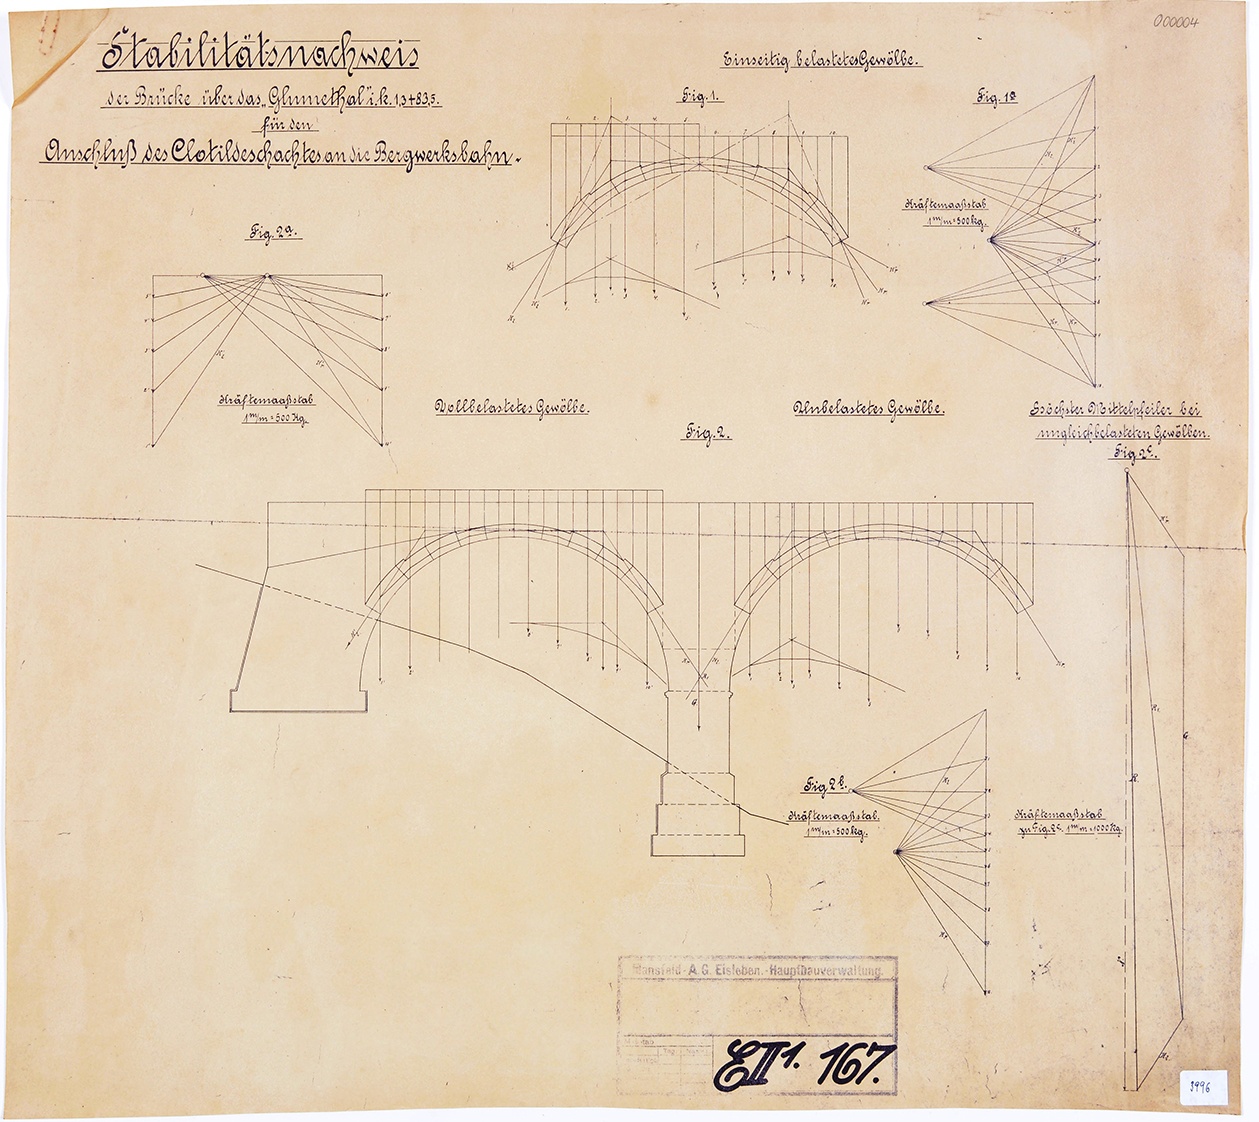 Stabilitätsnachweis der Brücke über das Glumethal i. k. 1,3 + 83,5 für den Anschluss des Clotildeschachtes an die Bergwerksbahn. (Mansfeld-Museum im Humboldt-Schloss CC BY-NC-SA)